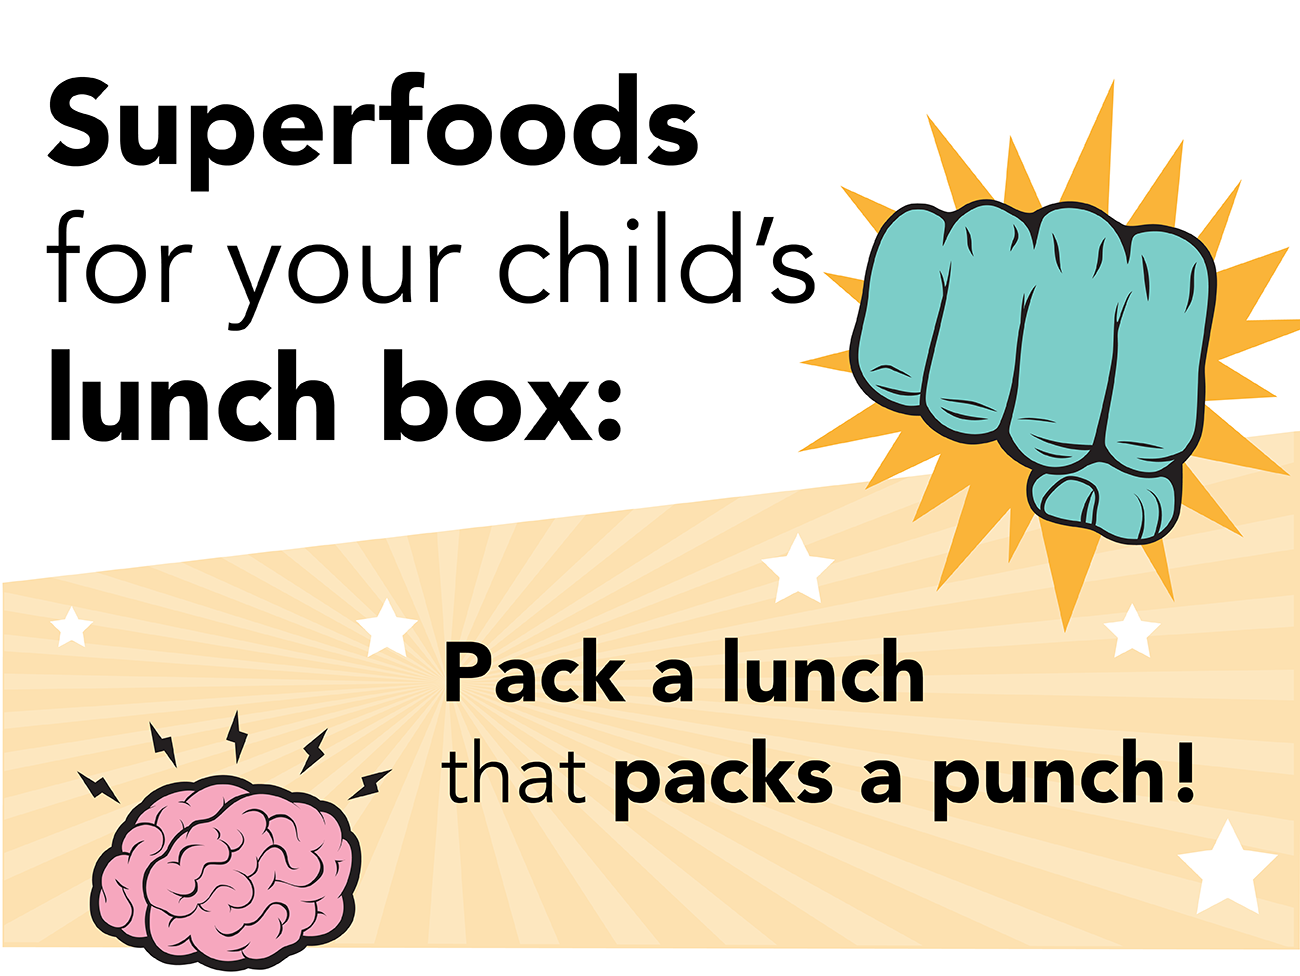 图形，带有拳头的图纸和“给孩子的午餐盒的超级食品：打包午餐！”